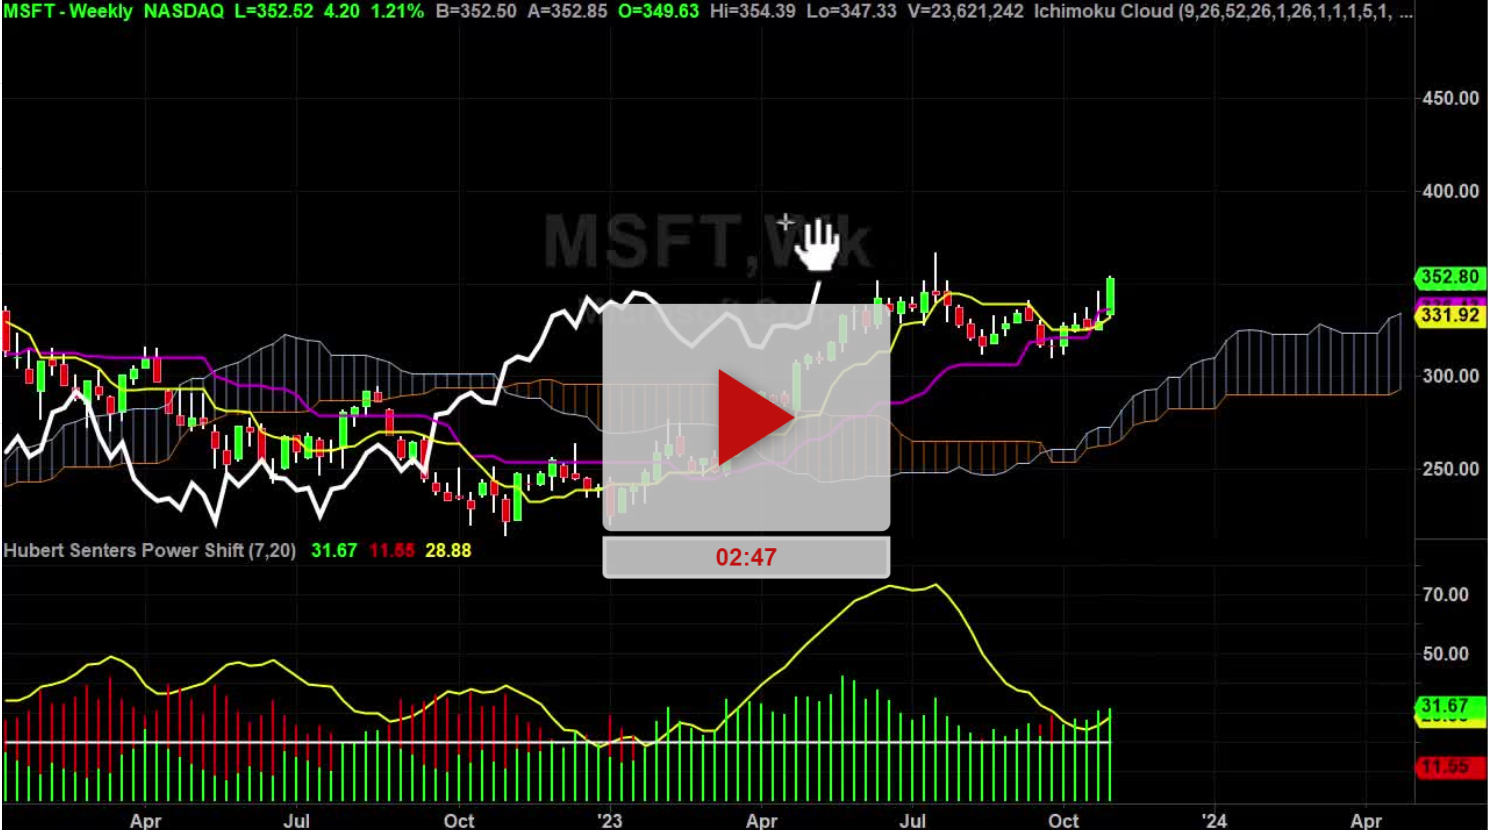 MSFT Stock Daily Chart Analysis Part 2 - Hubert Senters